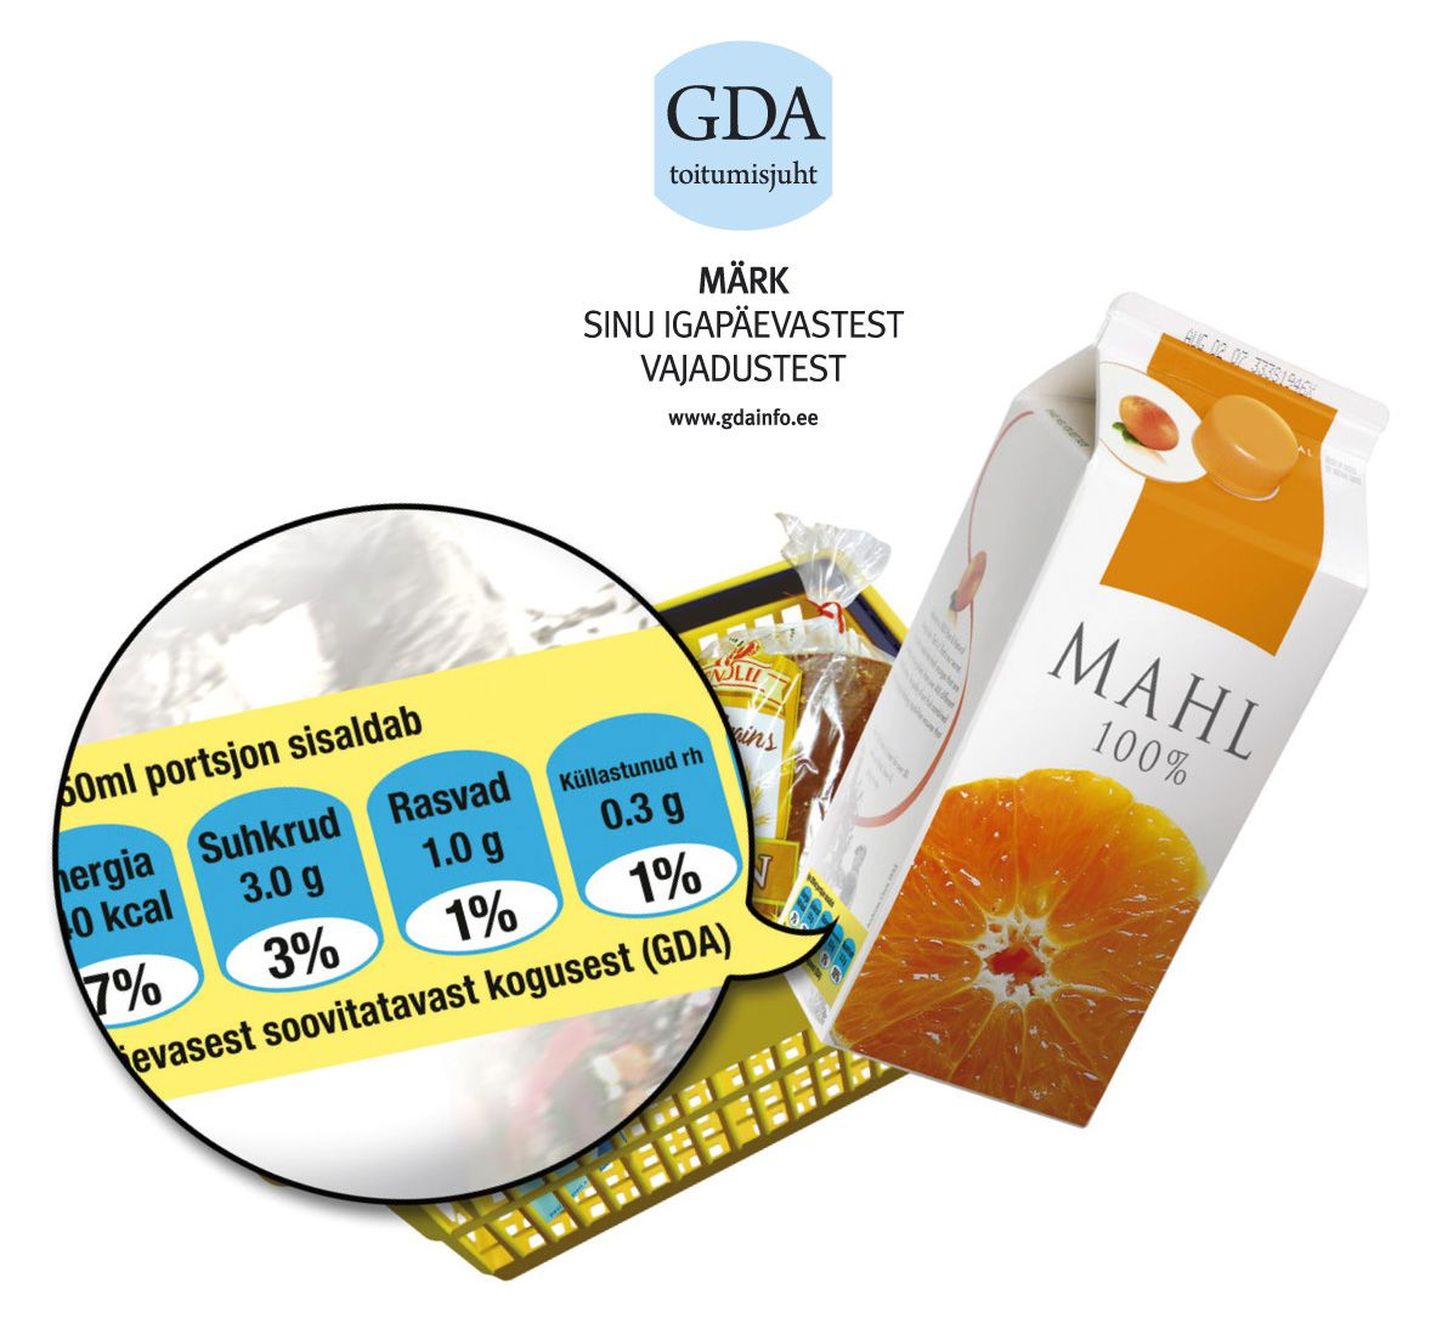 GDA märgistus aitab valida tasakaalustatud ja tervislikku toitu.